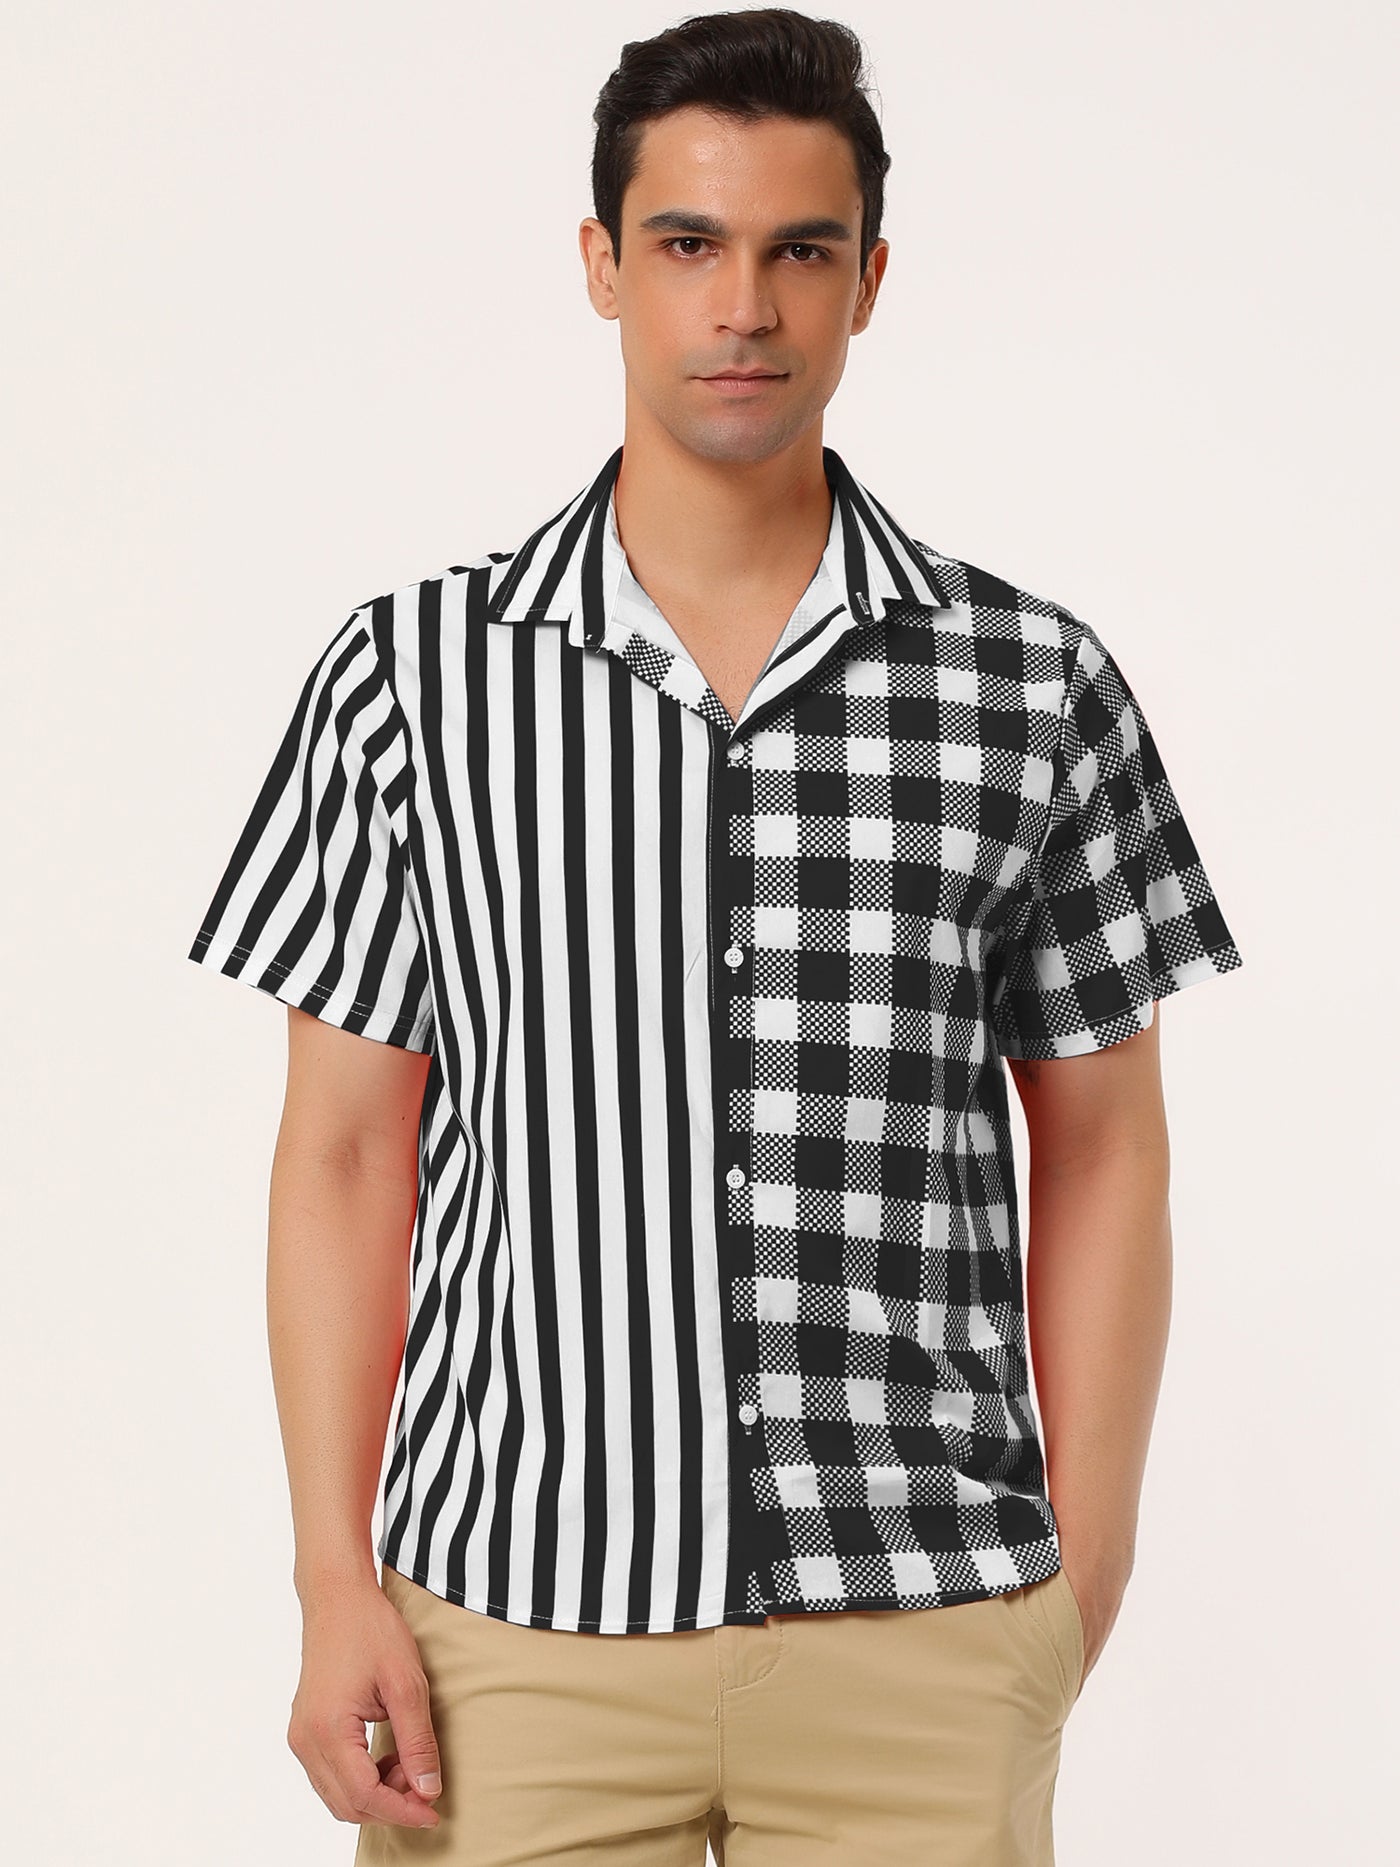 Bublédon Contrast Color Short Sleeve Button Striped Plaid Shirt